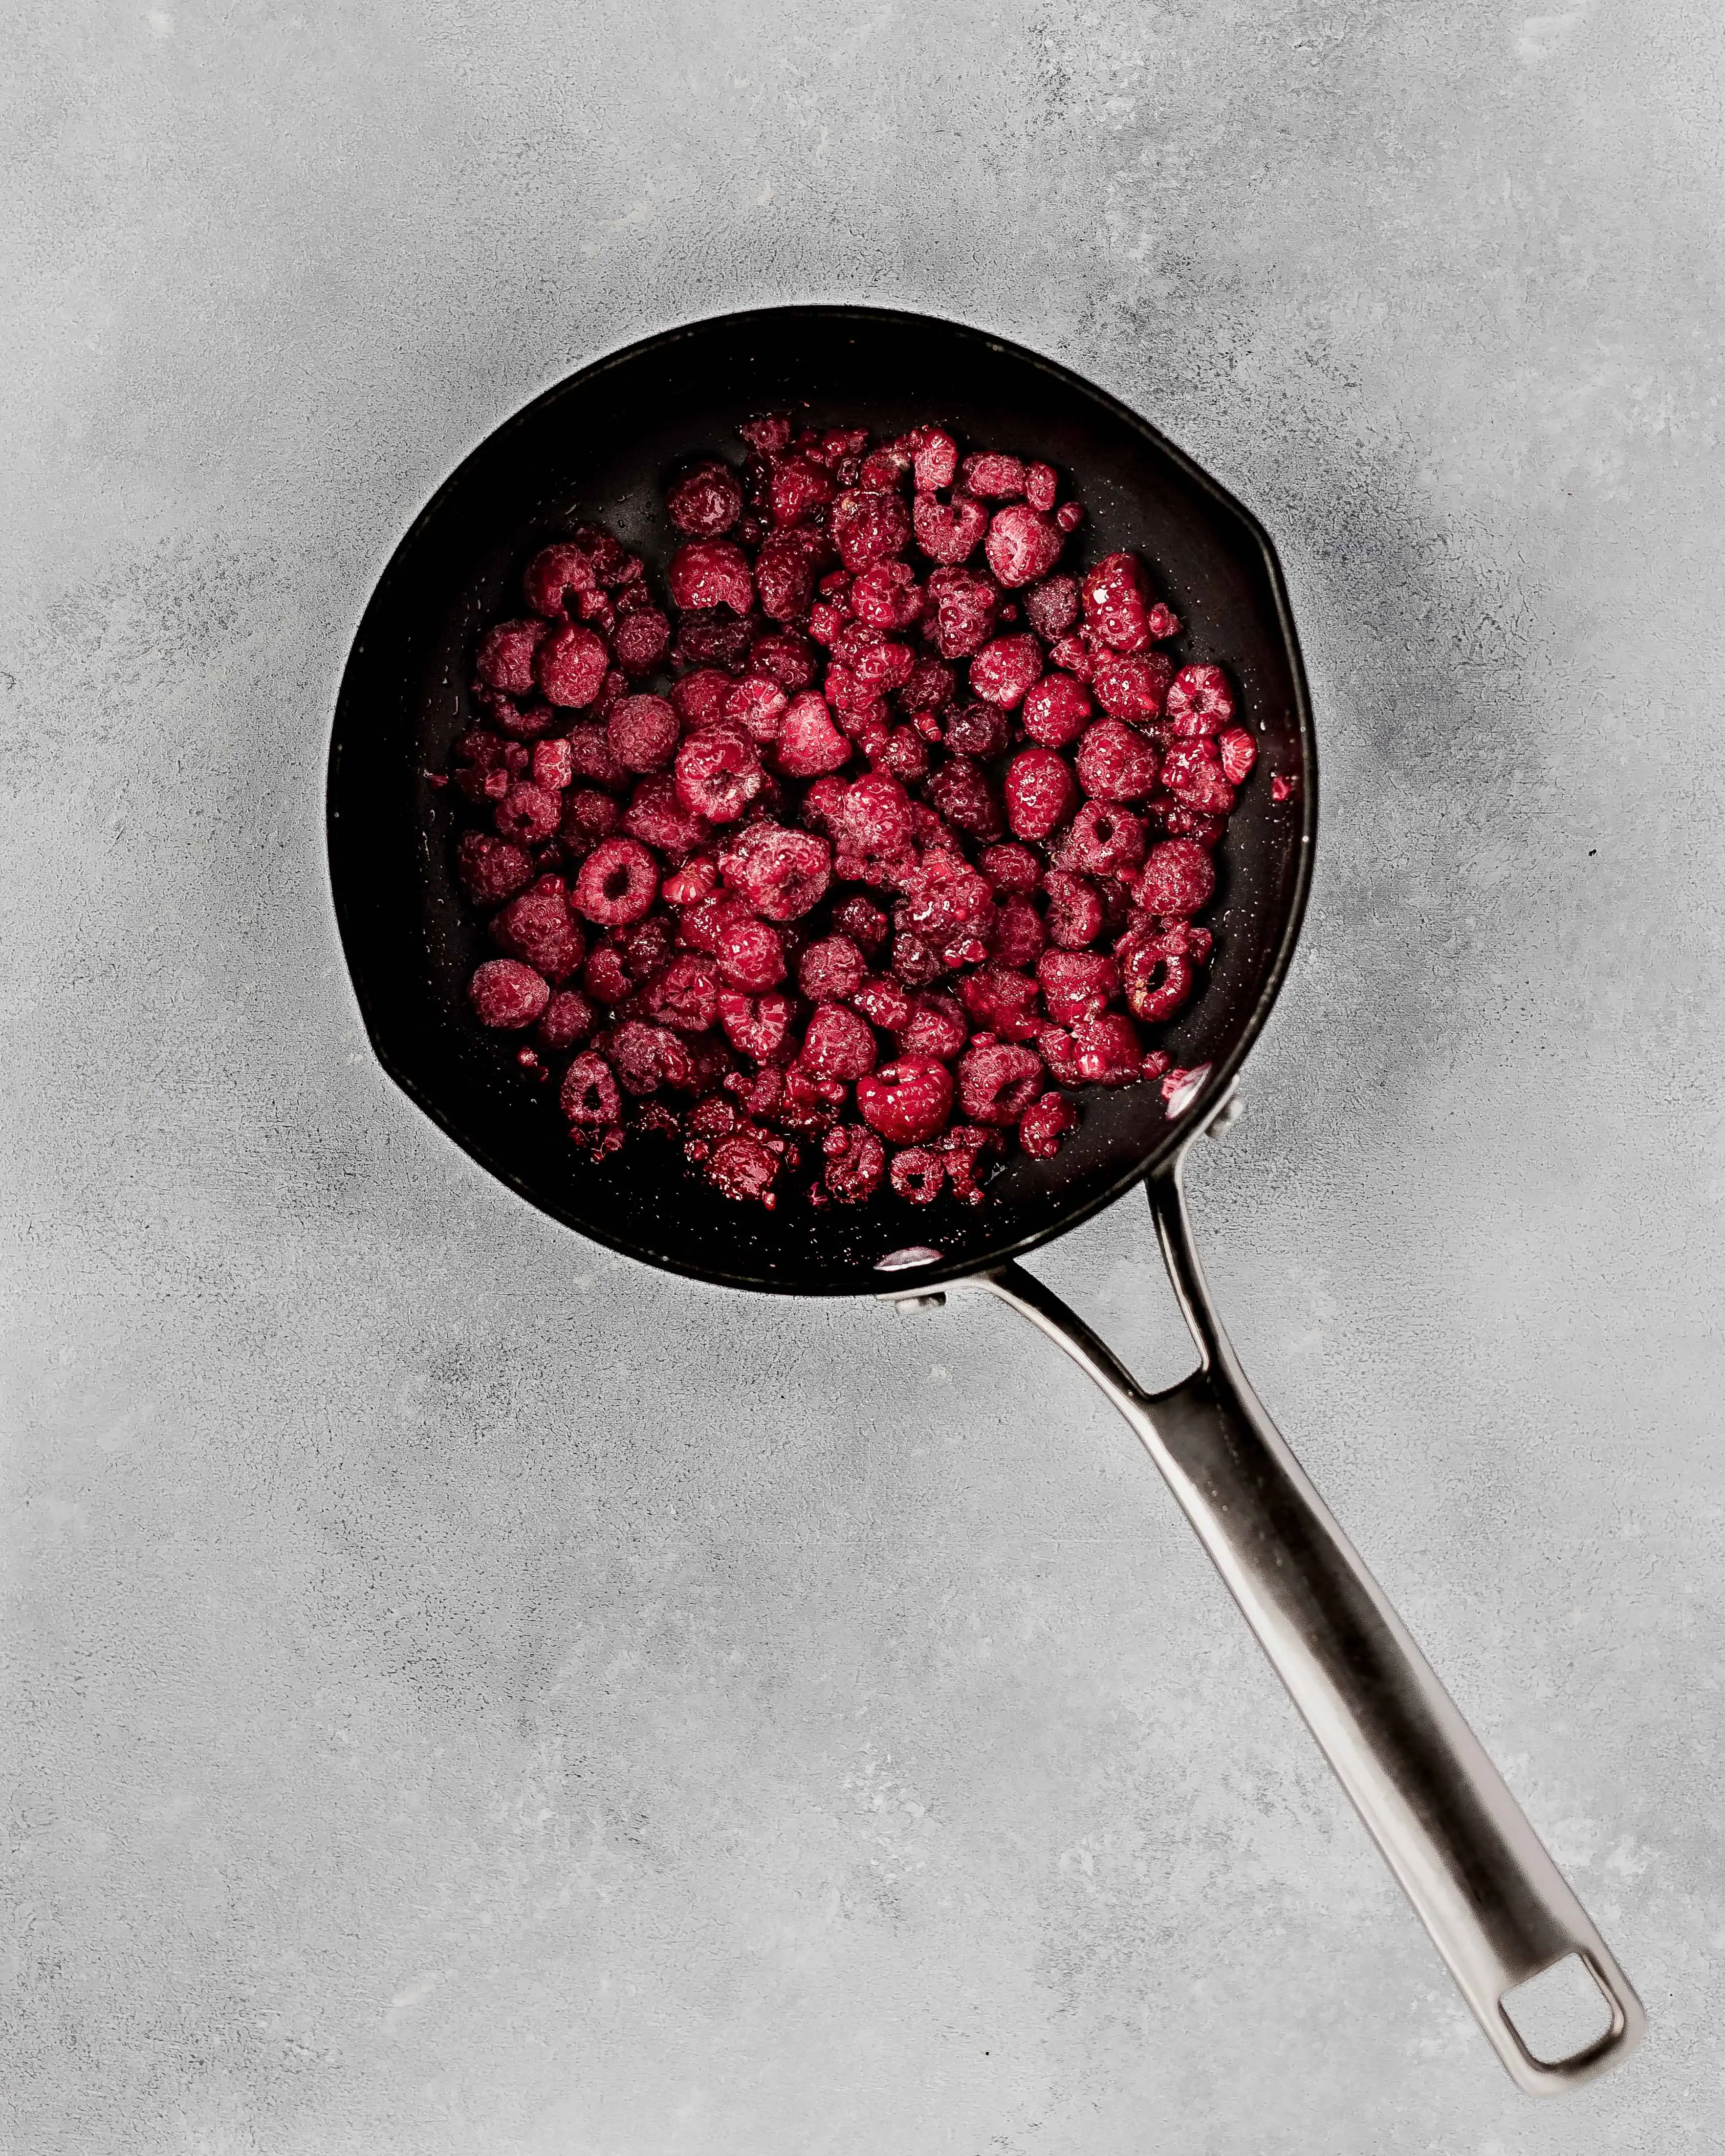 Frozen raspberries in a sauce pan.